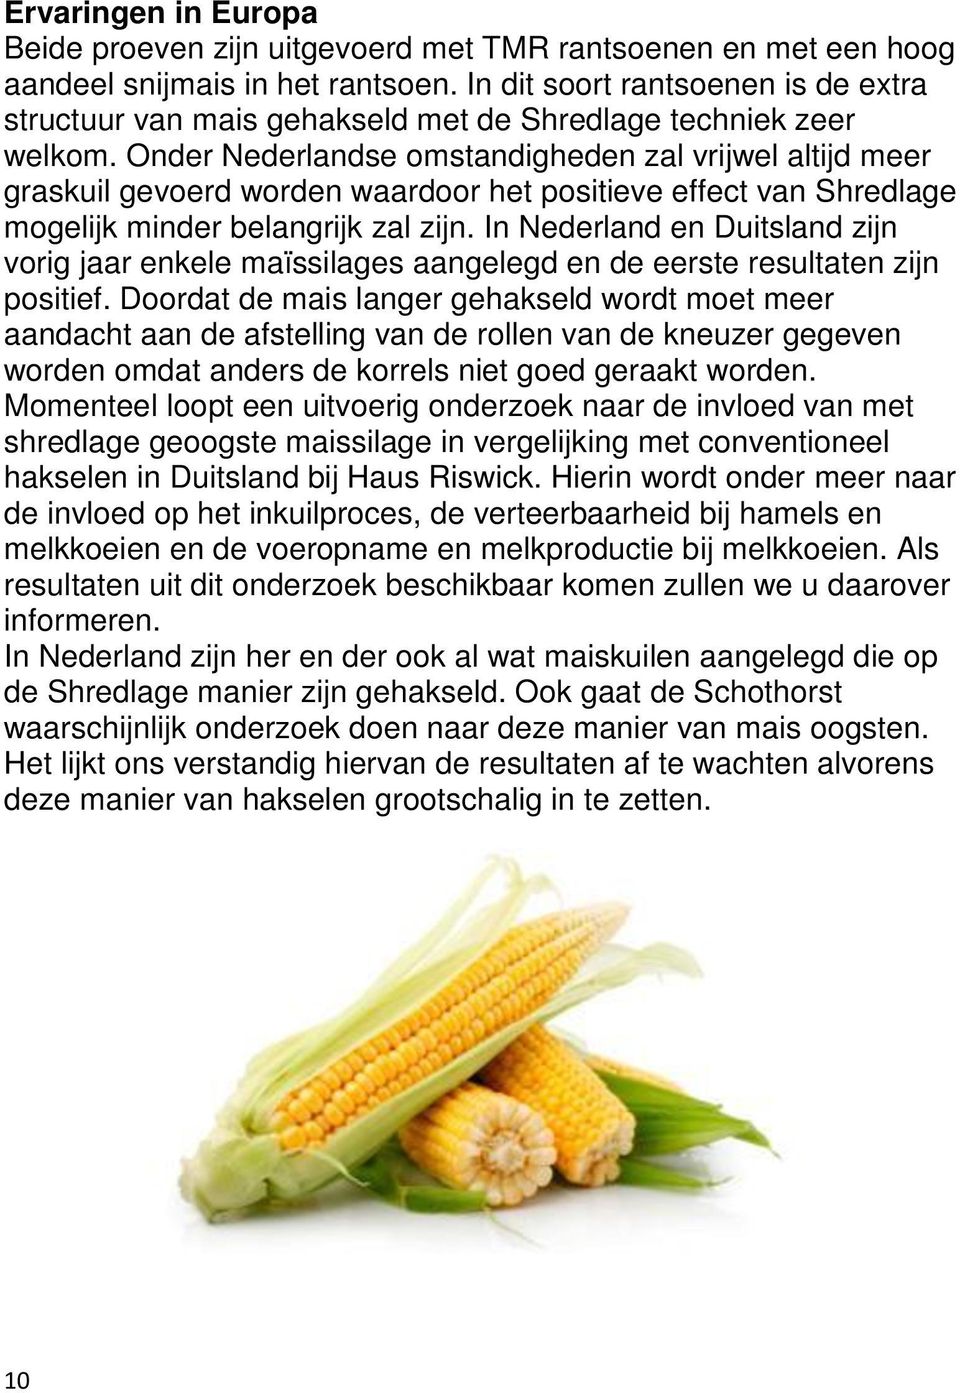 Onder Nederlandse omstandigheden zal vrijwel altijd meer graskuil gevoerd worden waardoor het positieve effect van Shredlage mogelijk minder belangrijk zal zijn.